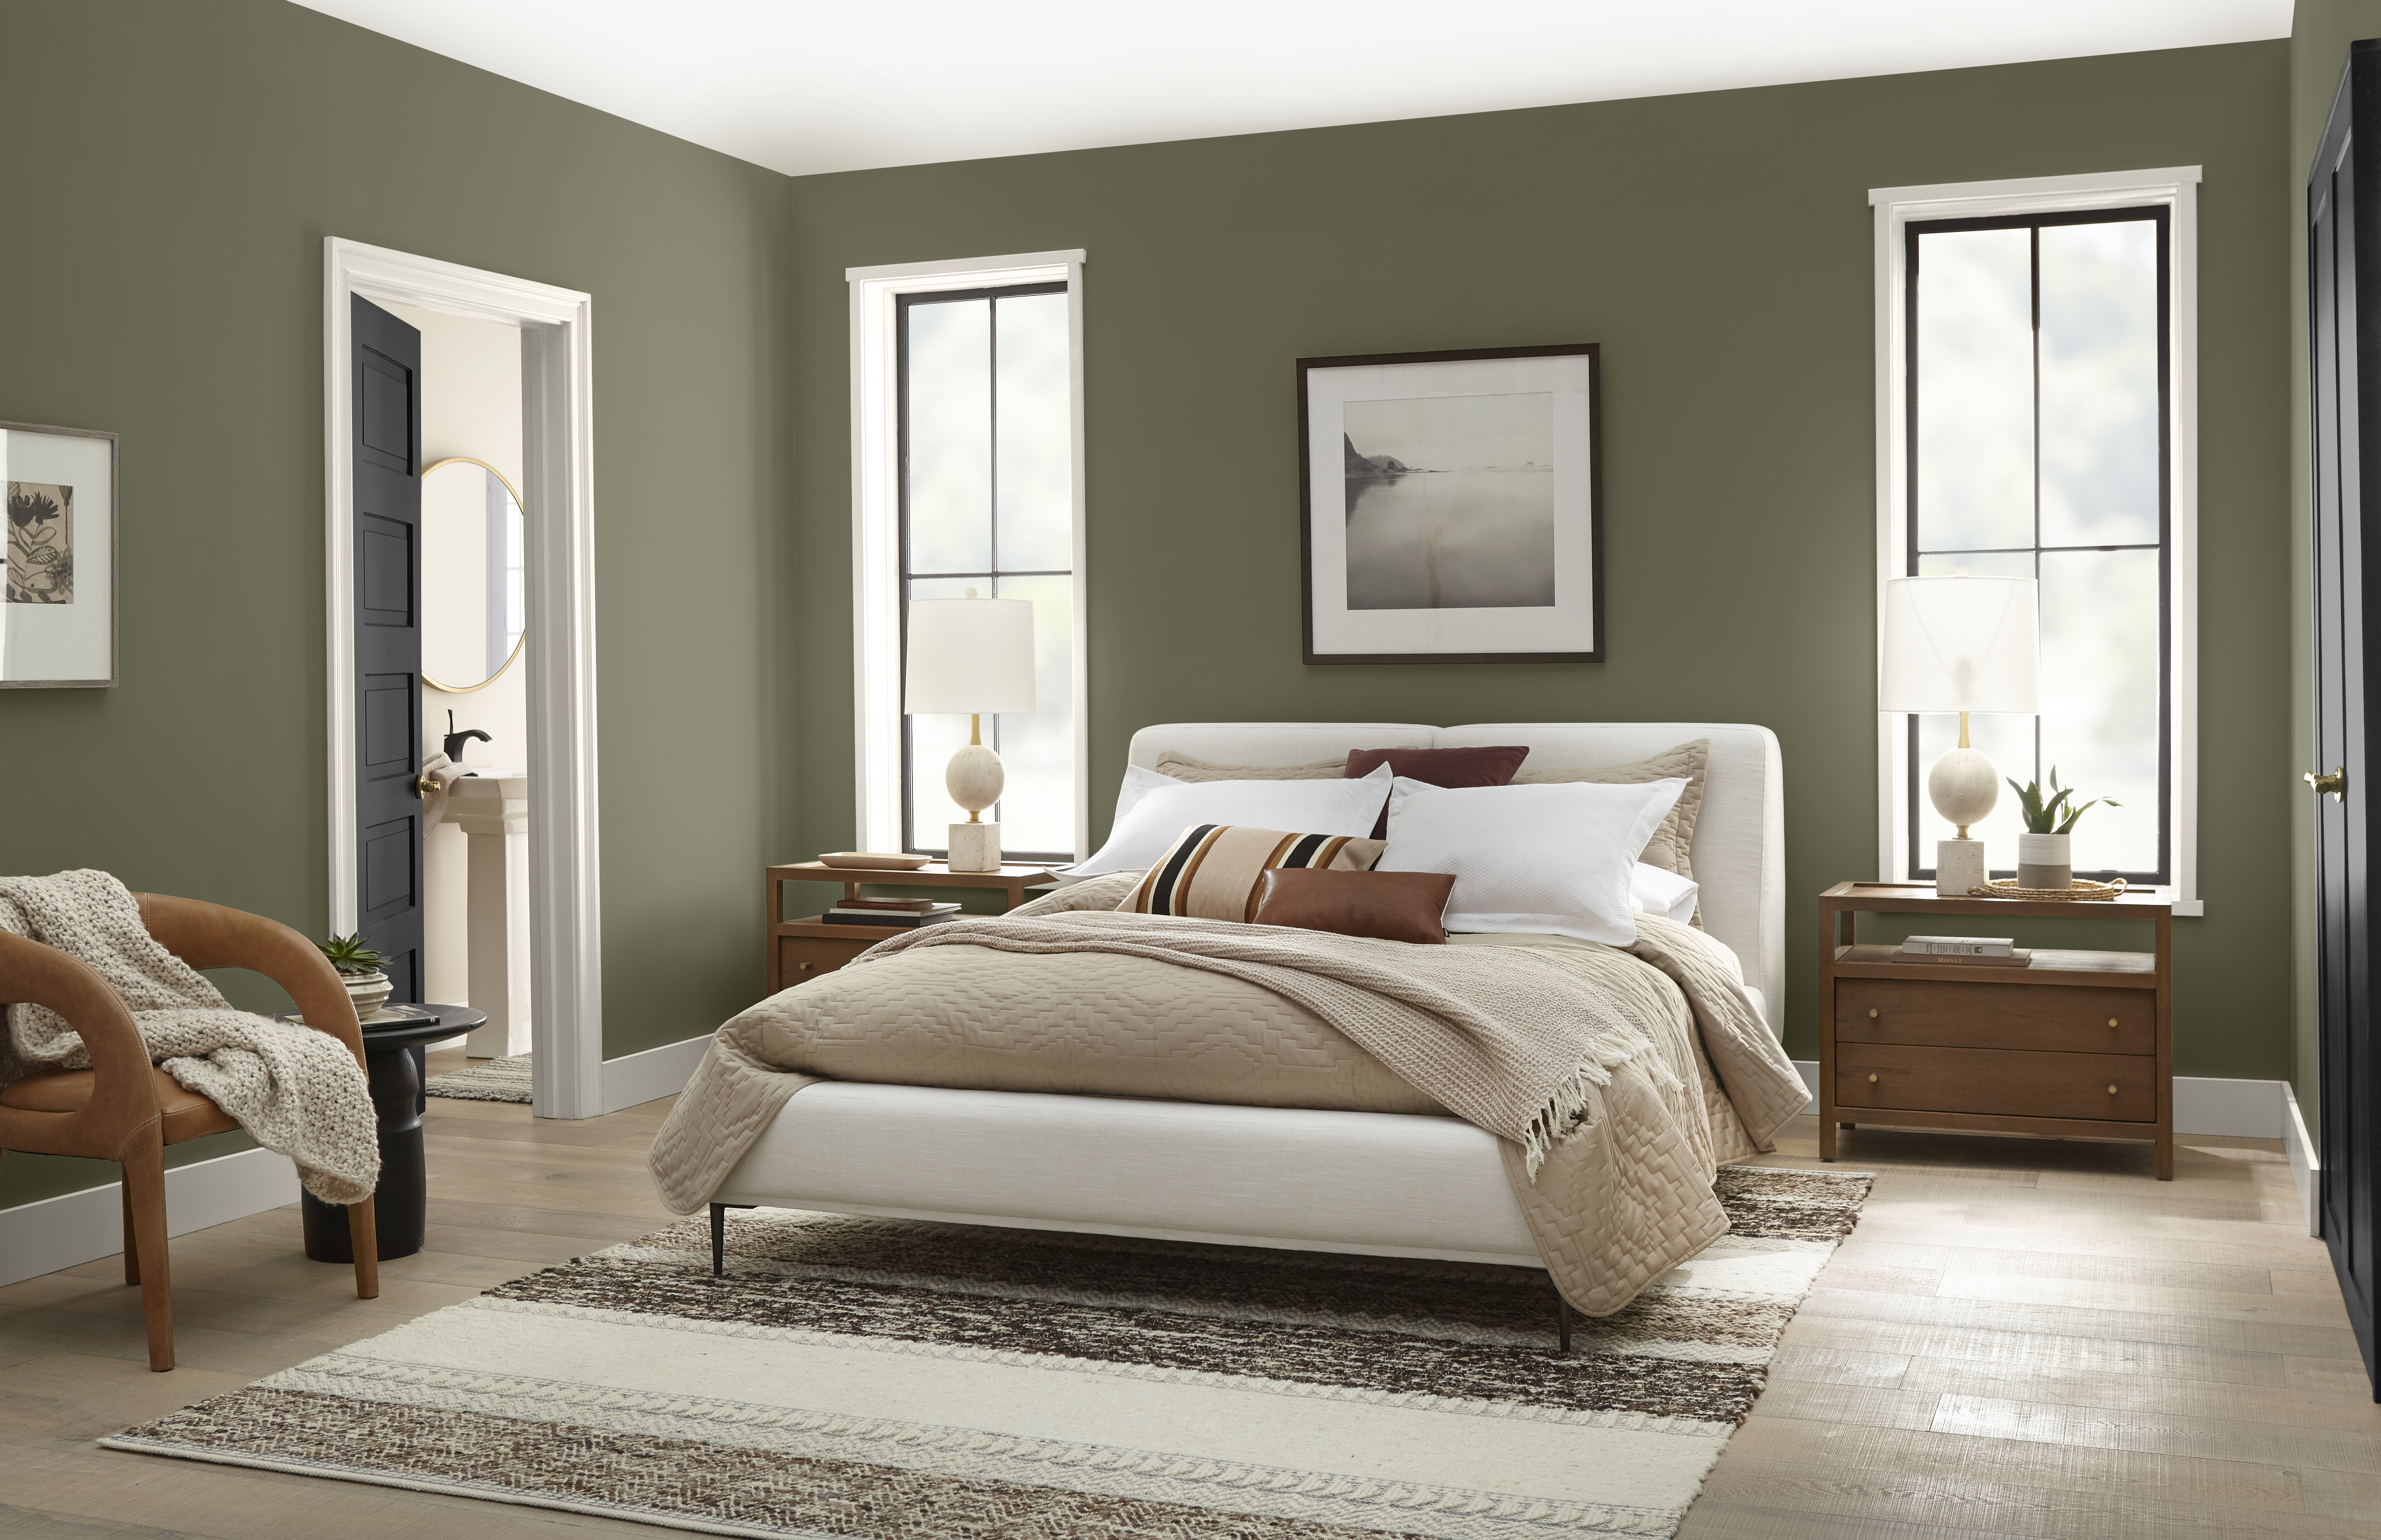 Une chambre à coucher confortable avec des murs peints dans un vert foncé chaud